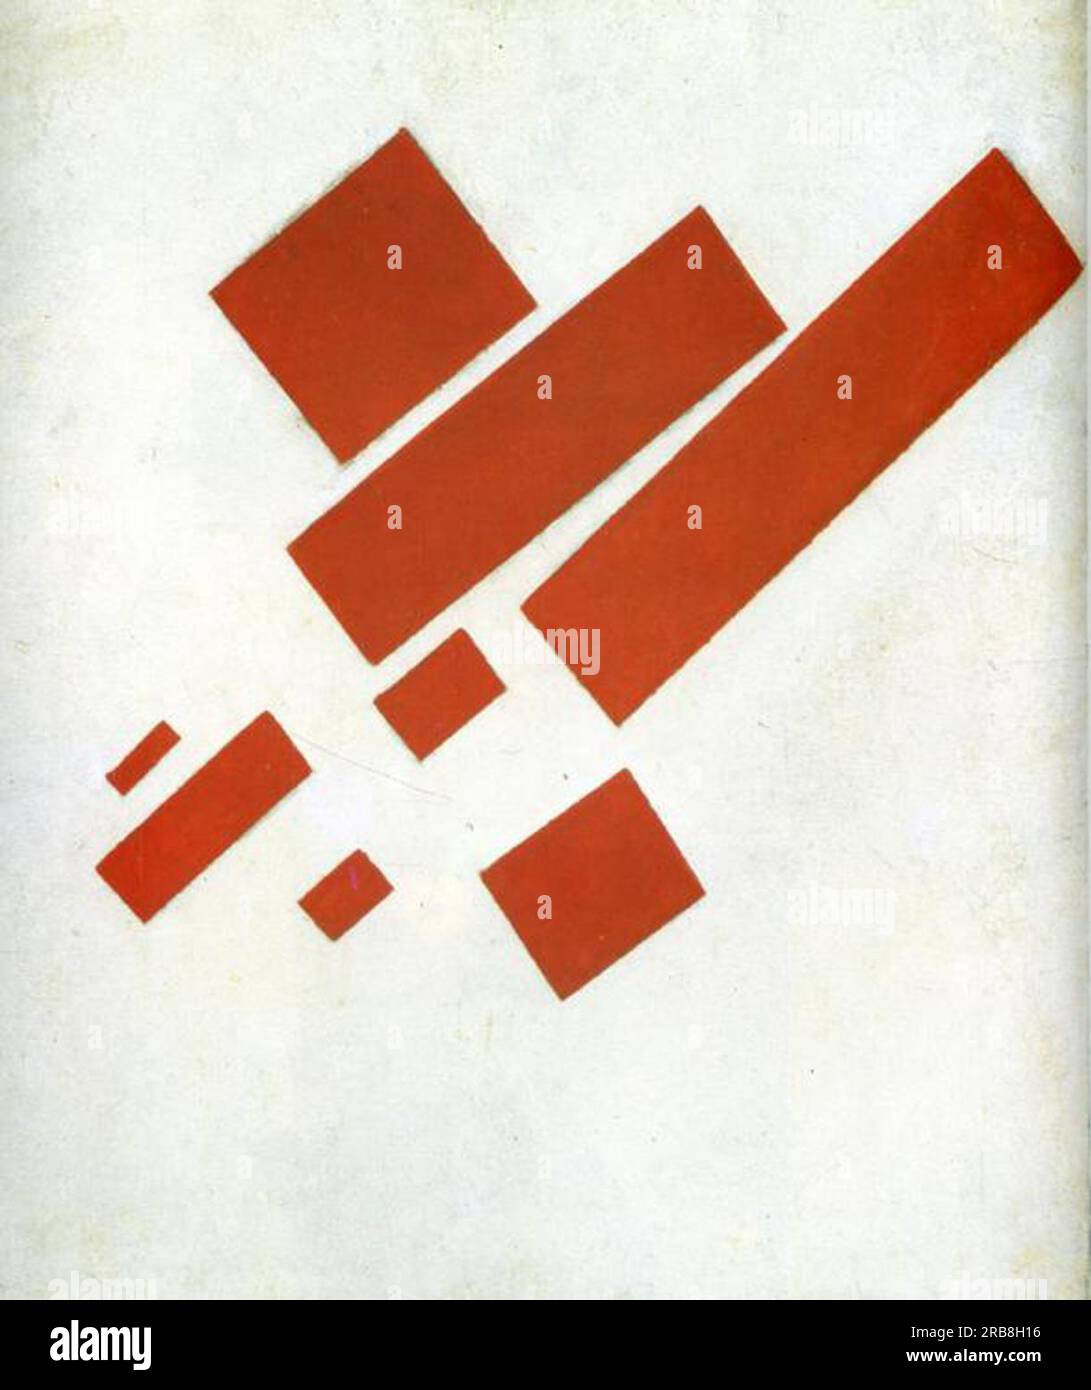 Le suprématisme. Autoportrait bidimensionnel 1915 par Kazimir Malevich Banque D'Images